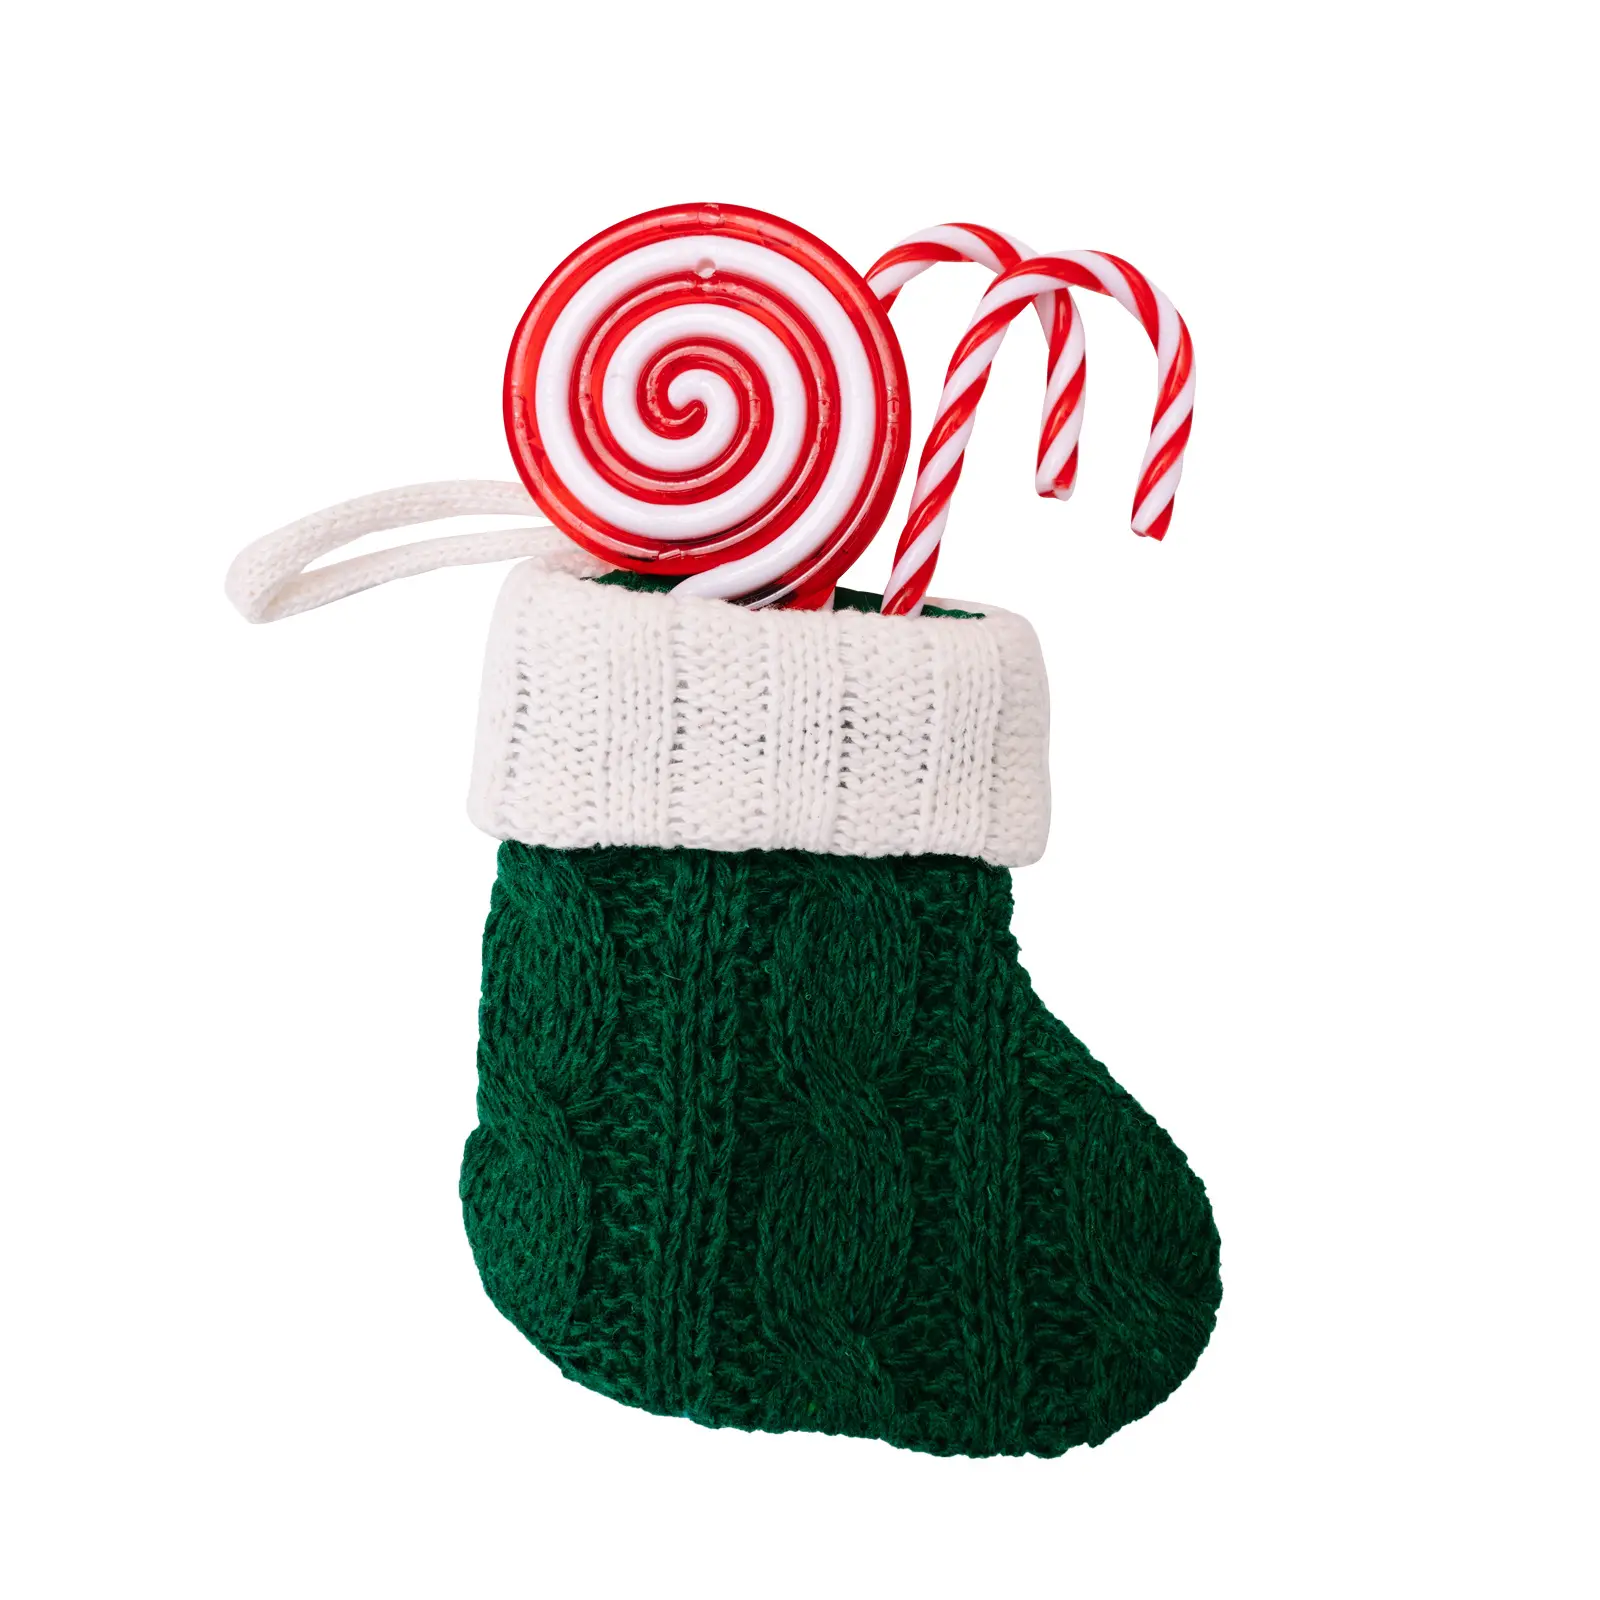 Yeni varış noel yeşil/kırmızı örme çorap dekorasyon mini noel ağacı çorap kolye ev tatil parti malzemeleri için